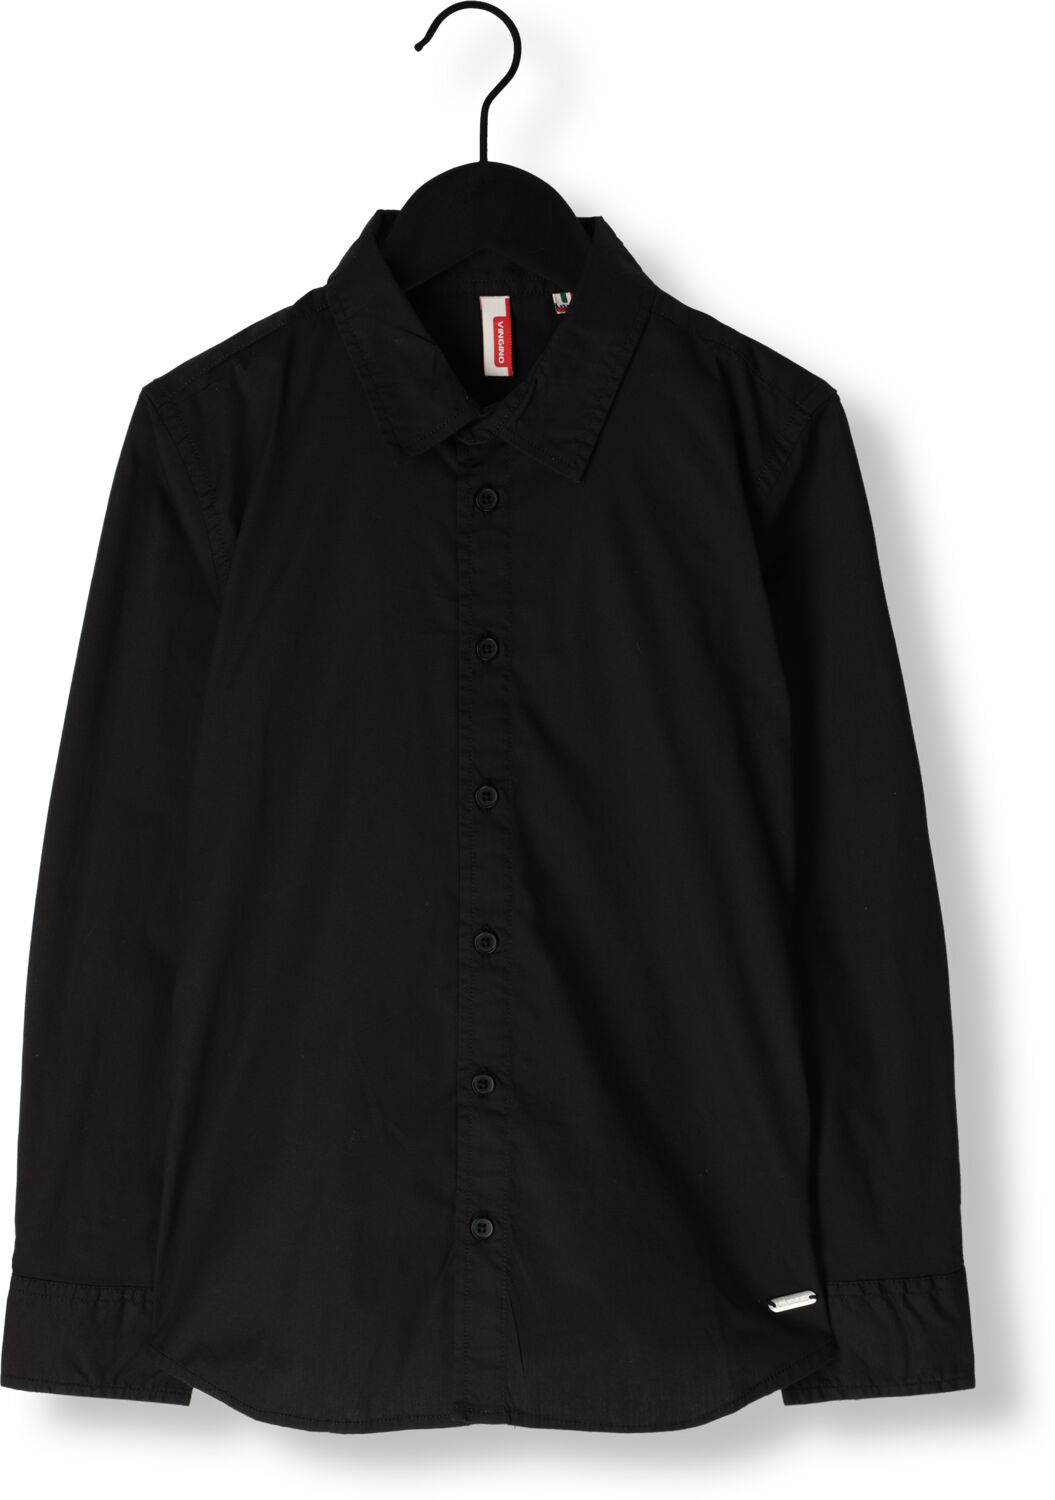 VINGINO overhemd Lasic zwart T-shirt Jongens Katoen Klassieke kraag Effen 152